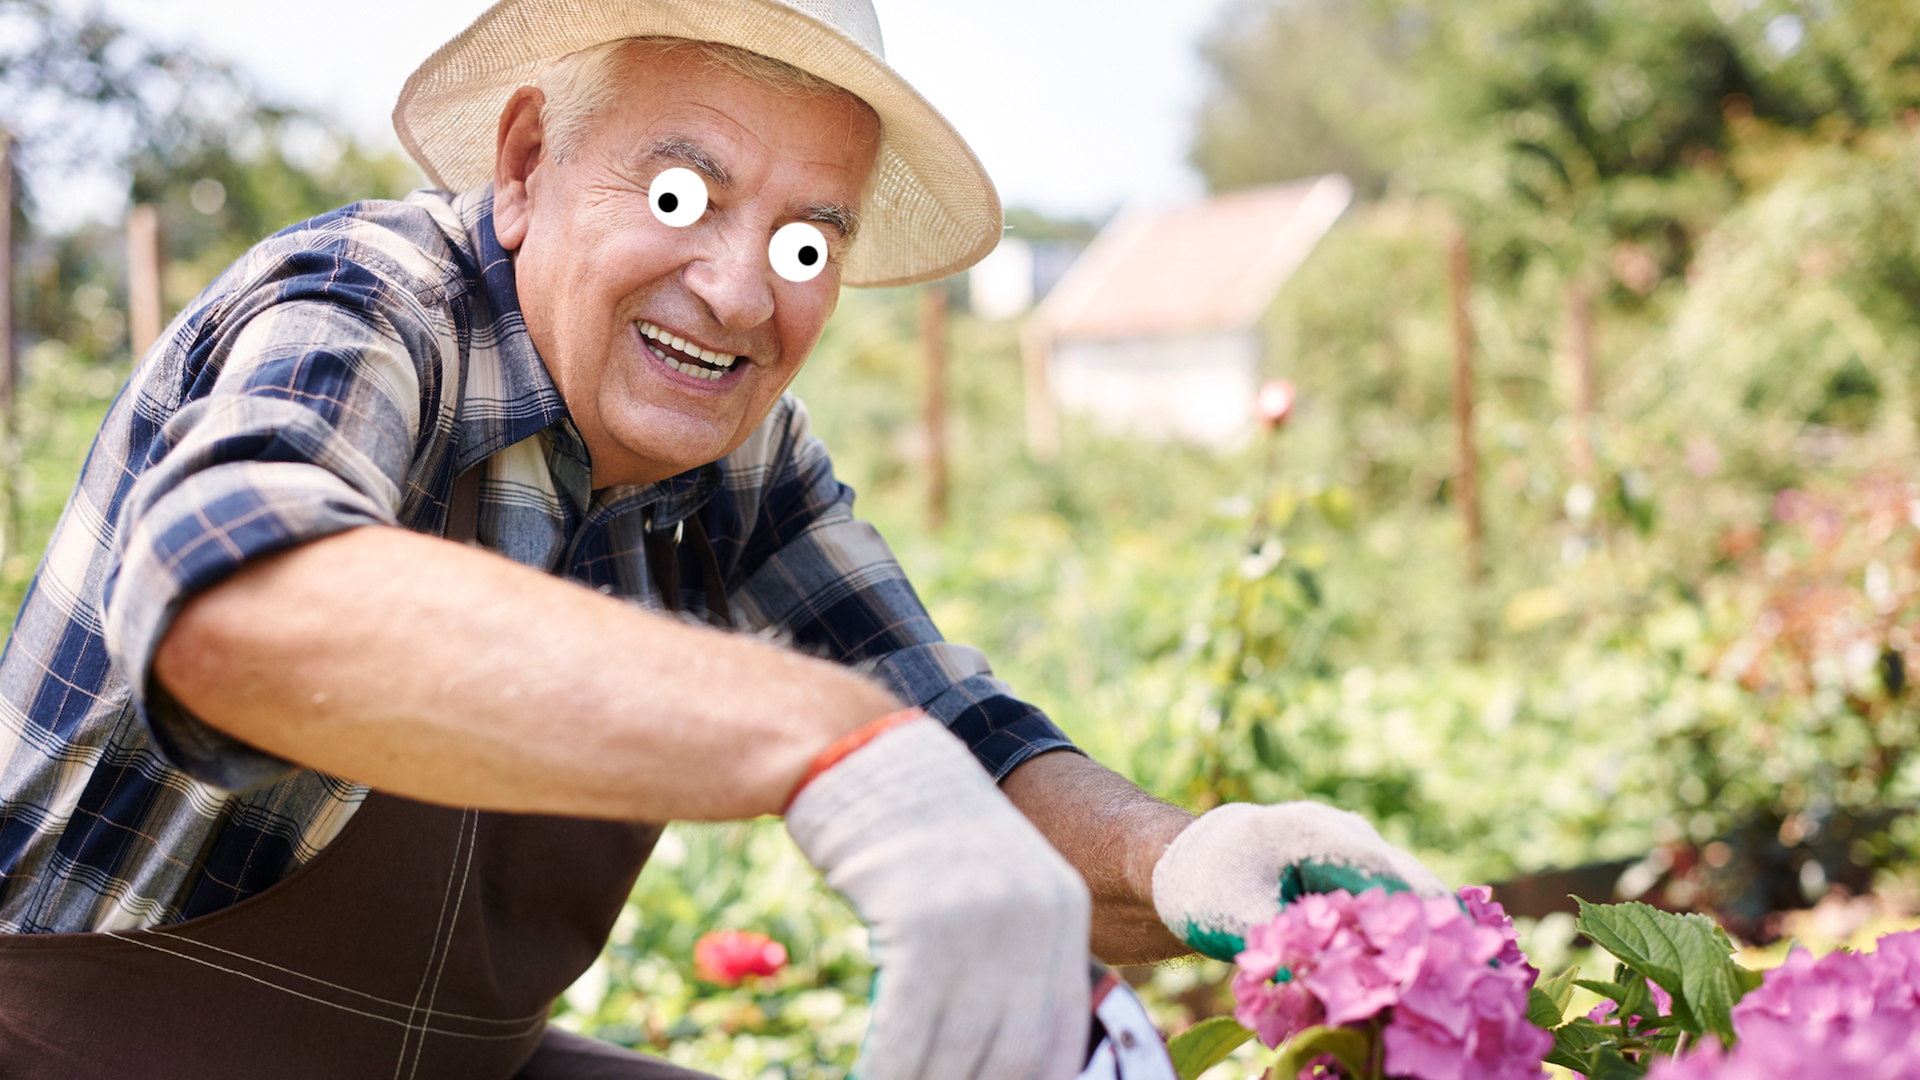 An elderly man gardening